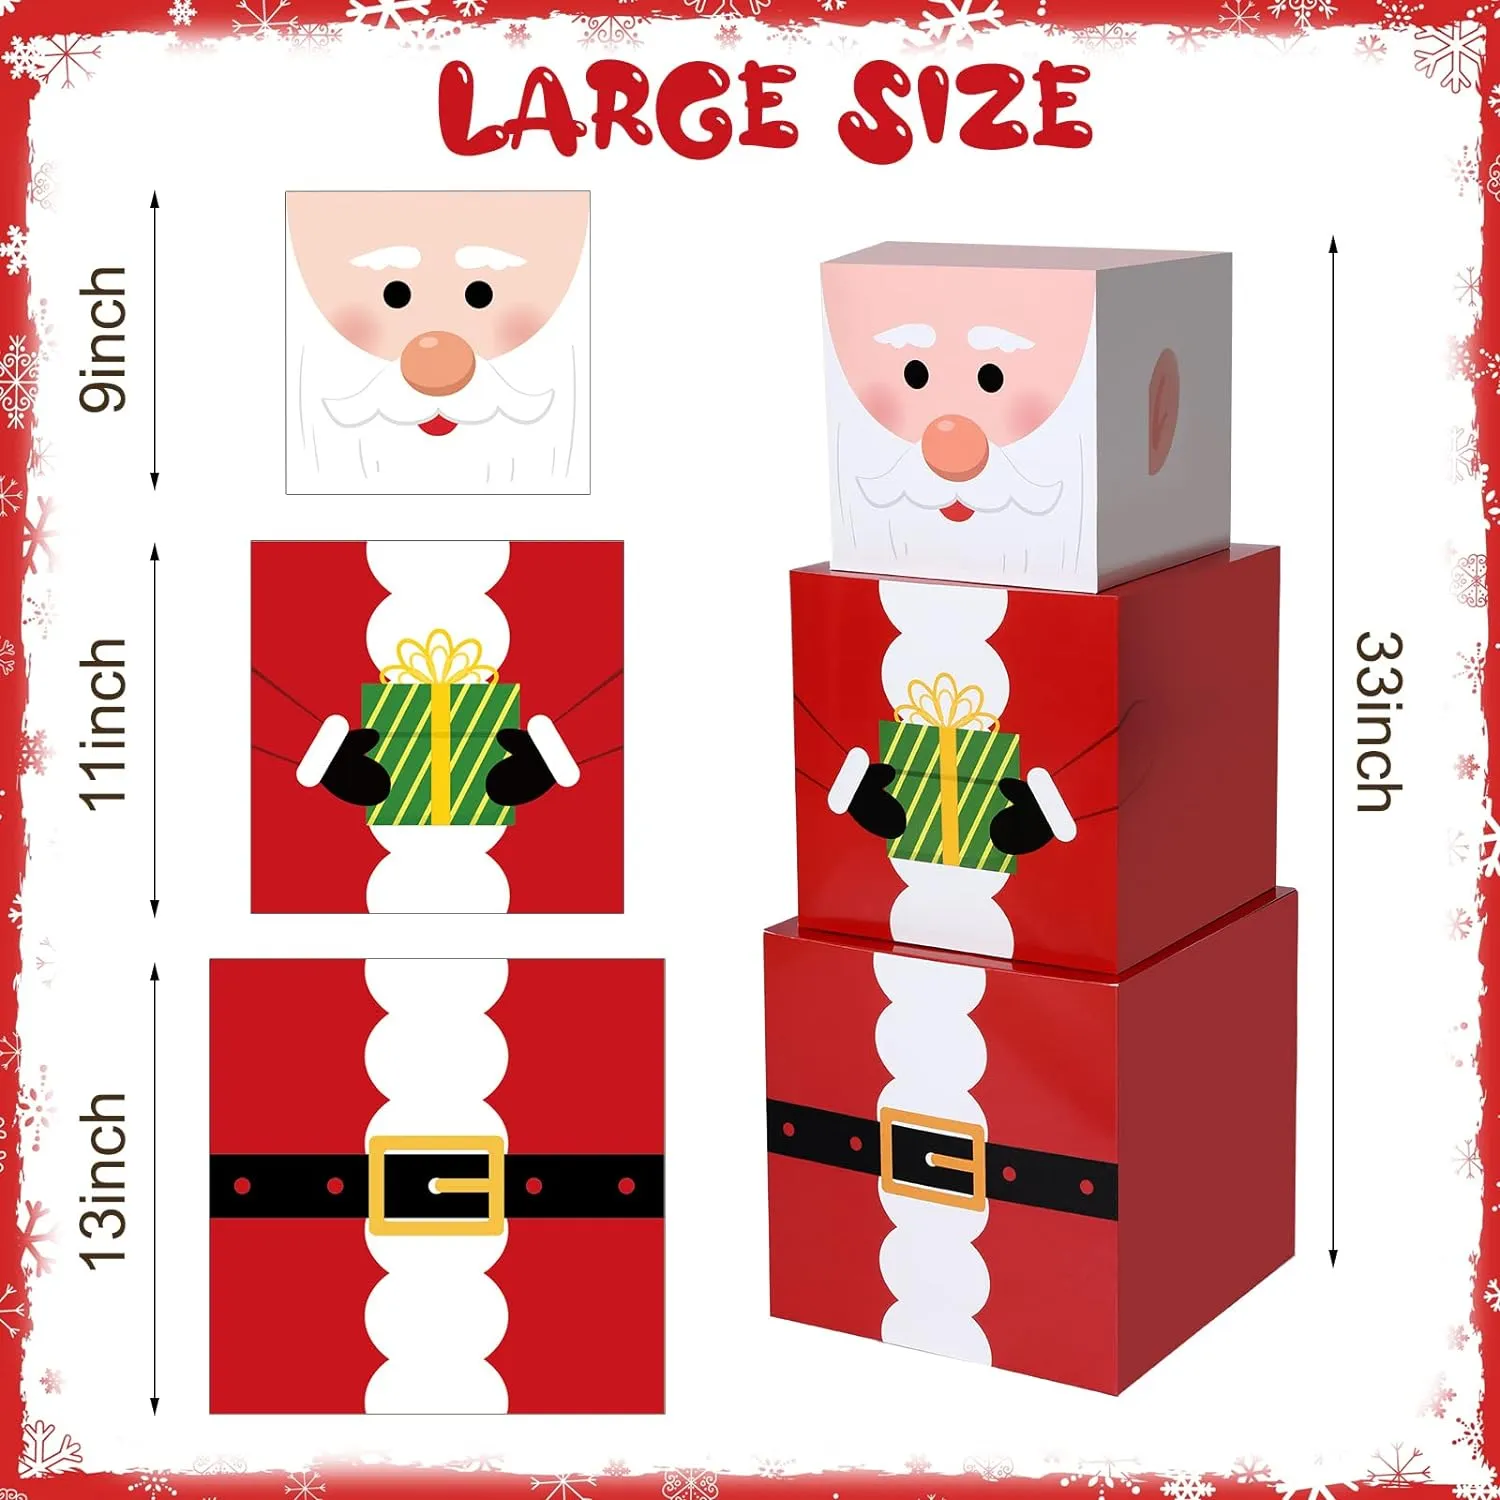 16 Stück Weihnachts-Stapelboxen mit Hüten in 4 Designs, stapelbare Schneemann-Geschenkbox, Weihnachts-Nistkästen, dekoratives Weihnachts-Stapelgeschenk